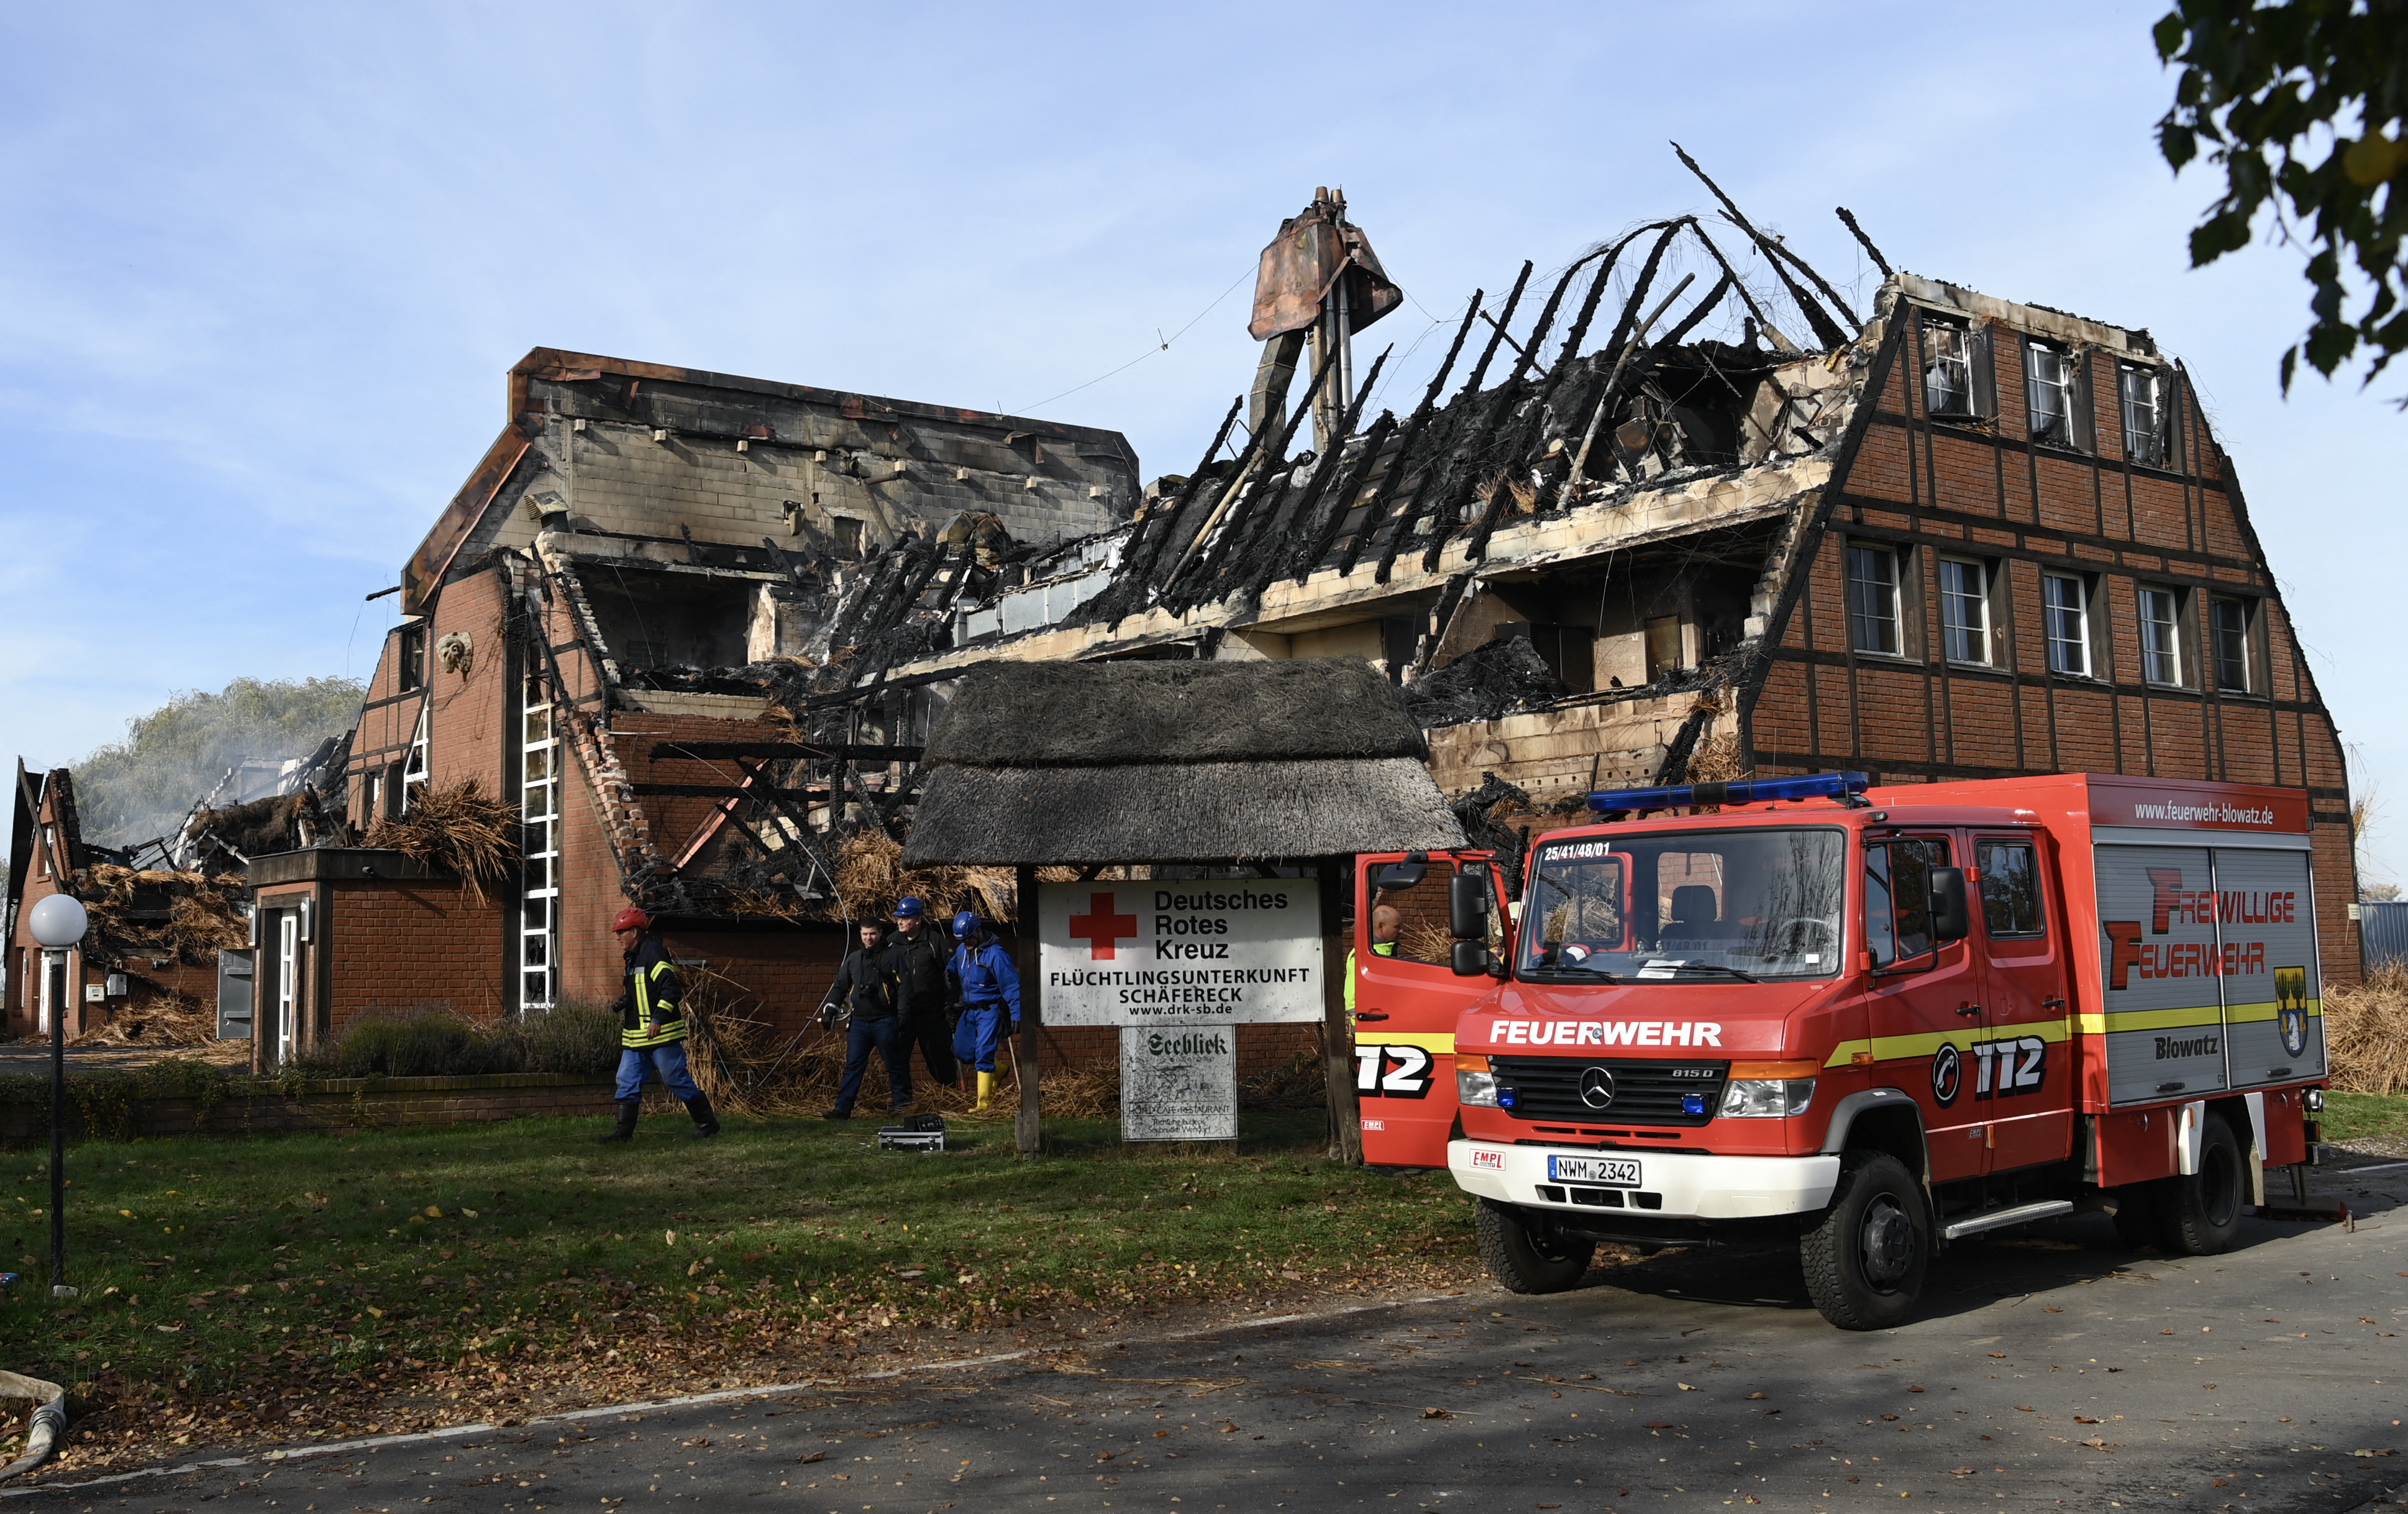 Burnt house for Ukrainian refugees in Gross Stroemkendorf